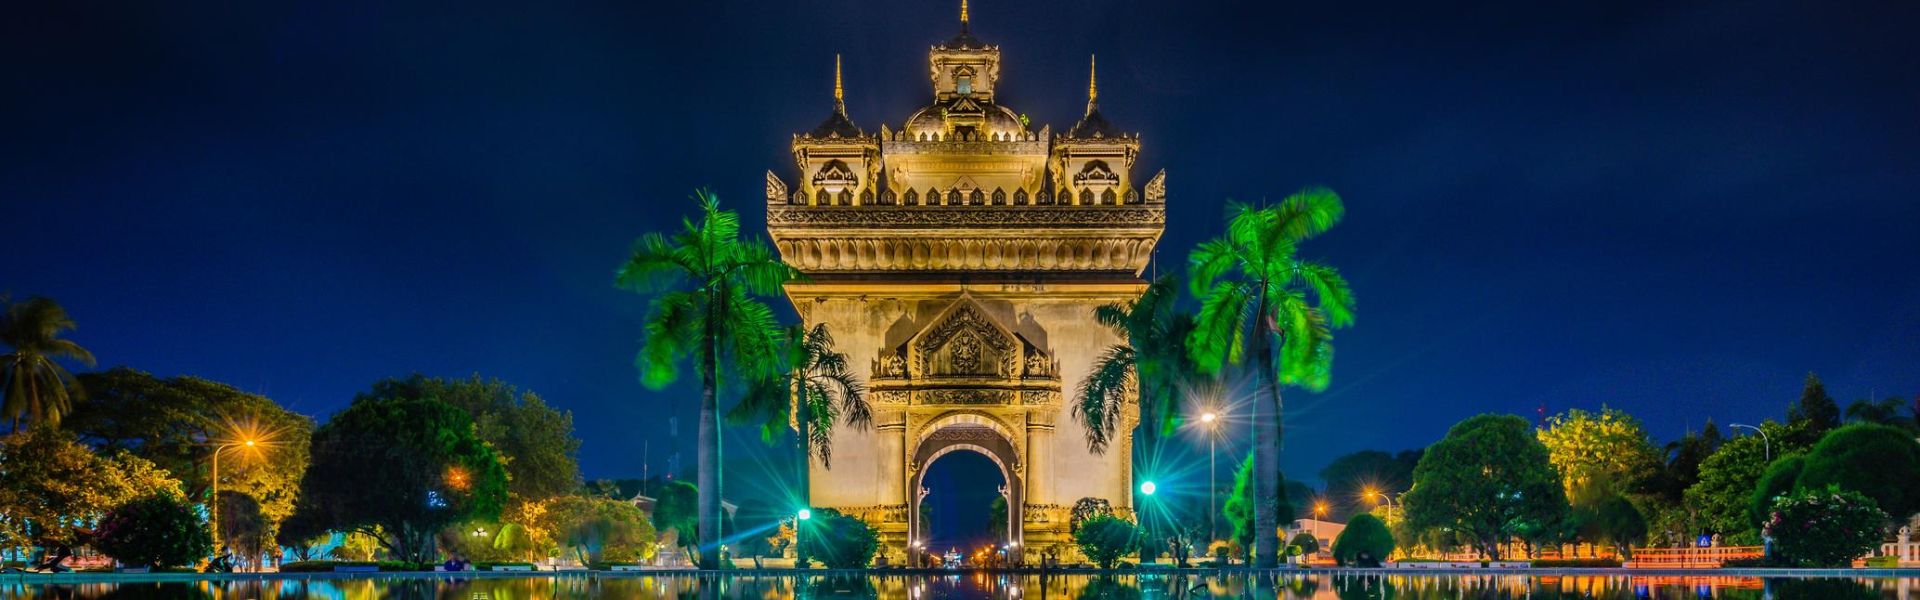 Vientián - Consejos de viaje | Guía de viajes a Laos